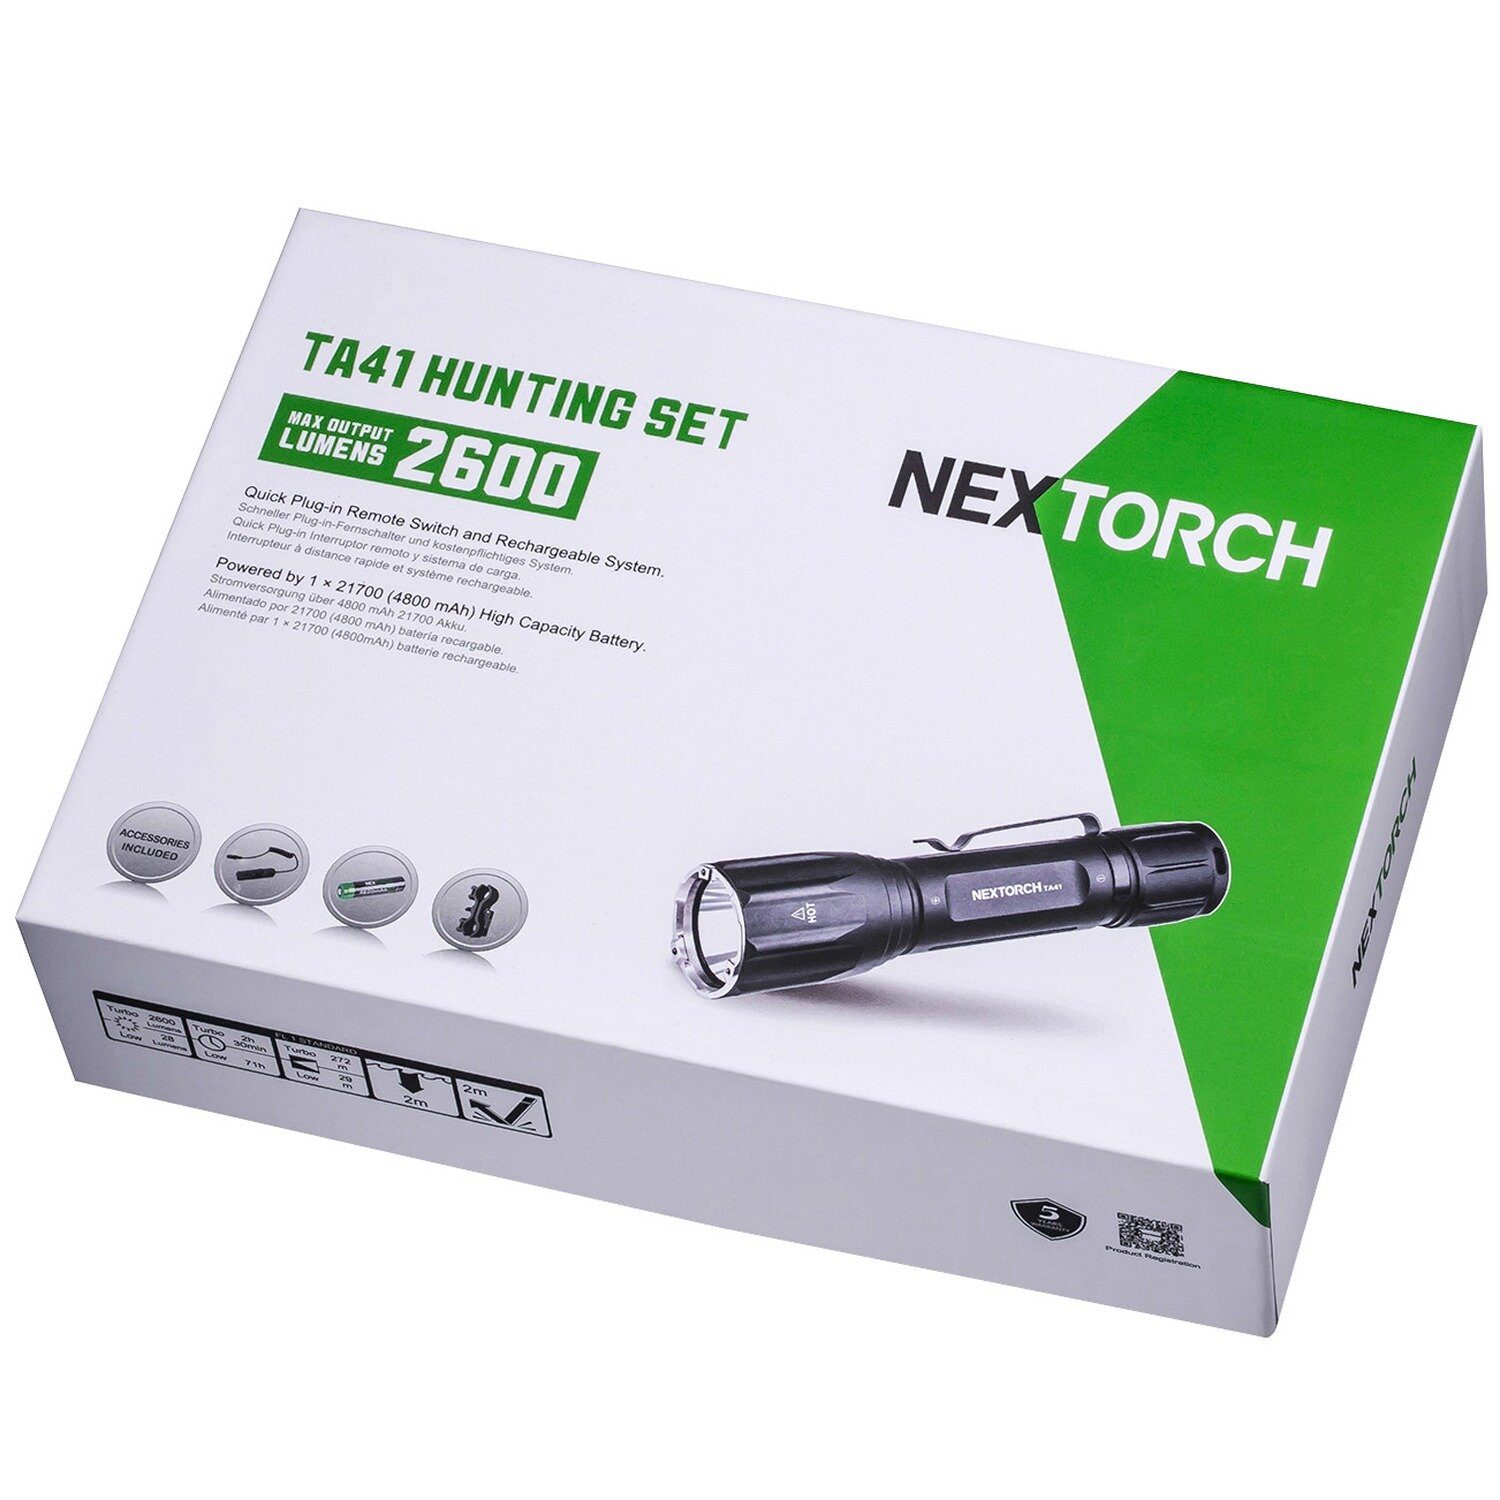 Taschenlampe Nextorch Lampe Set Nextorch TA41